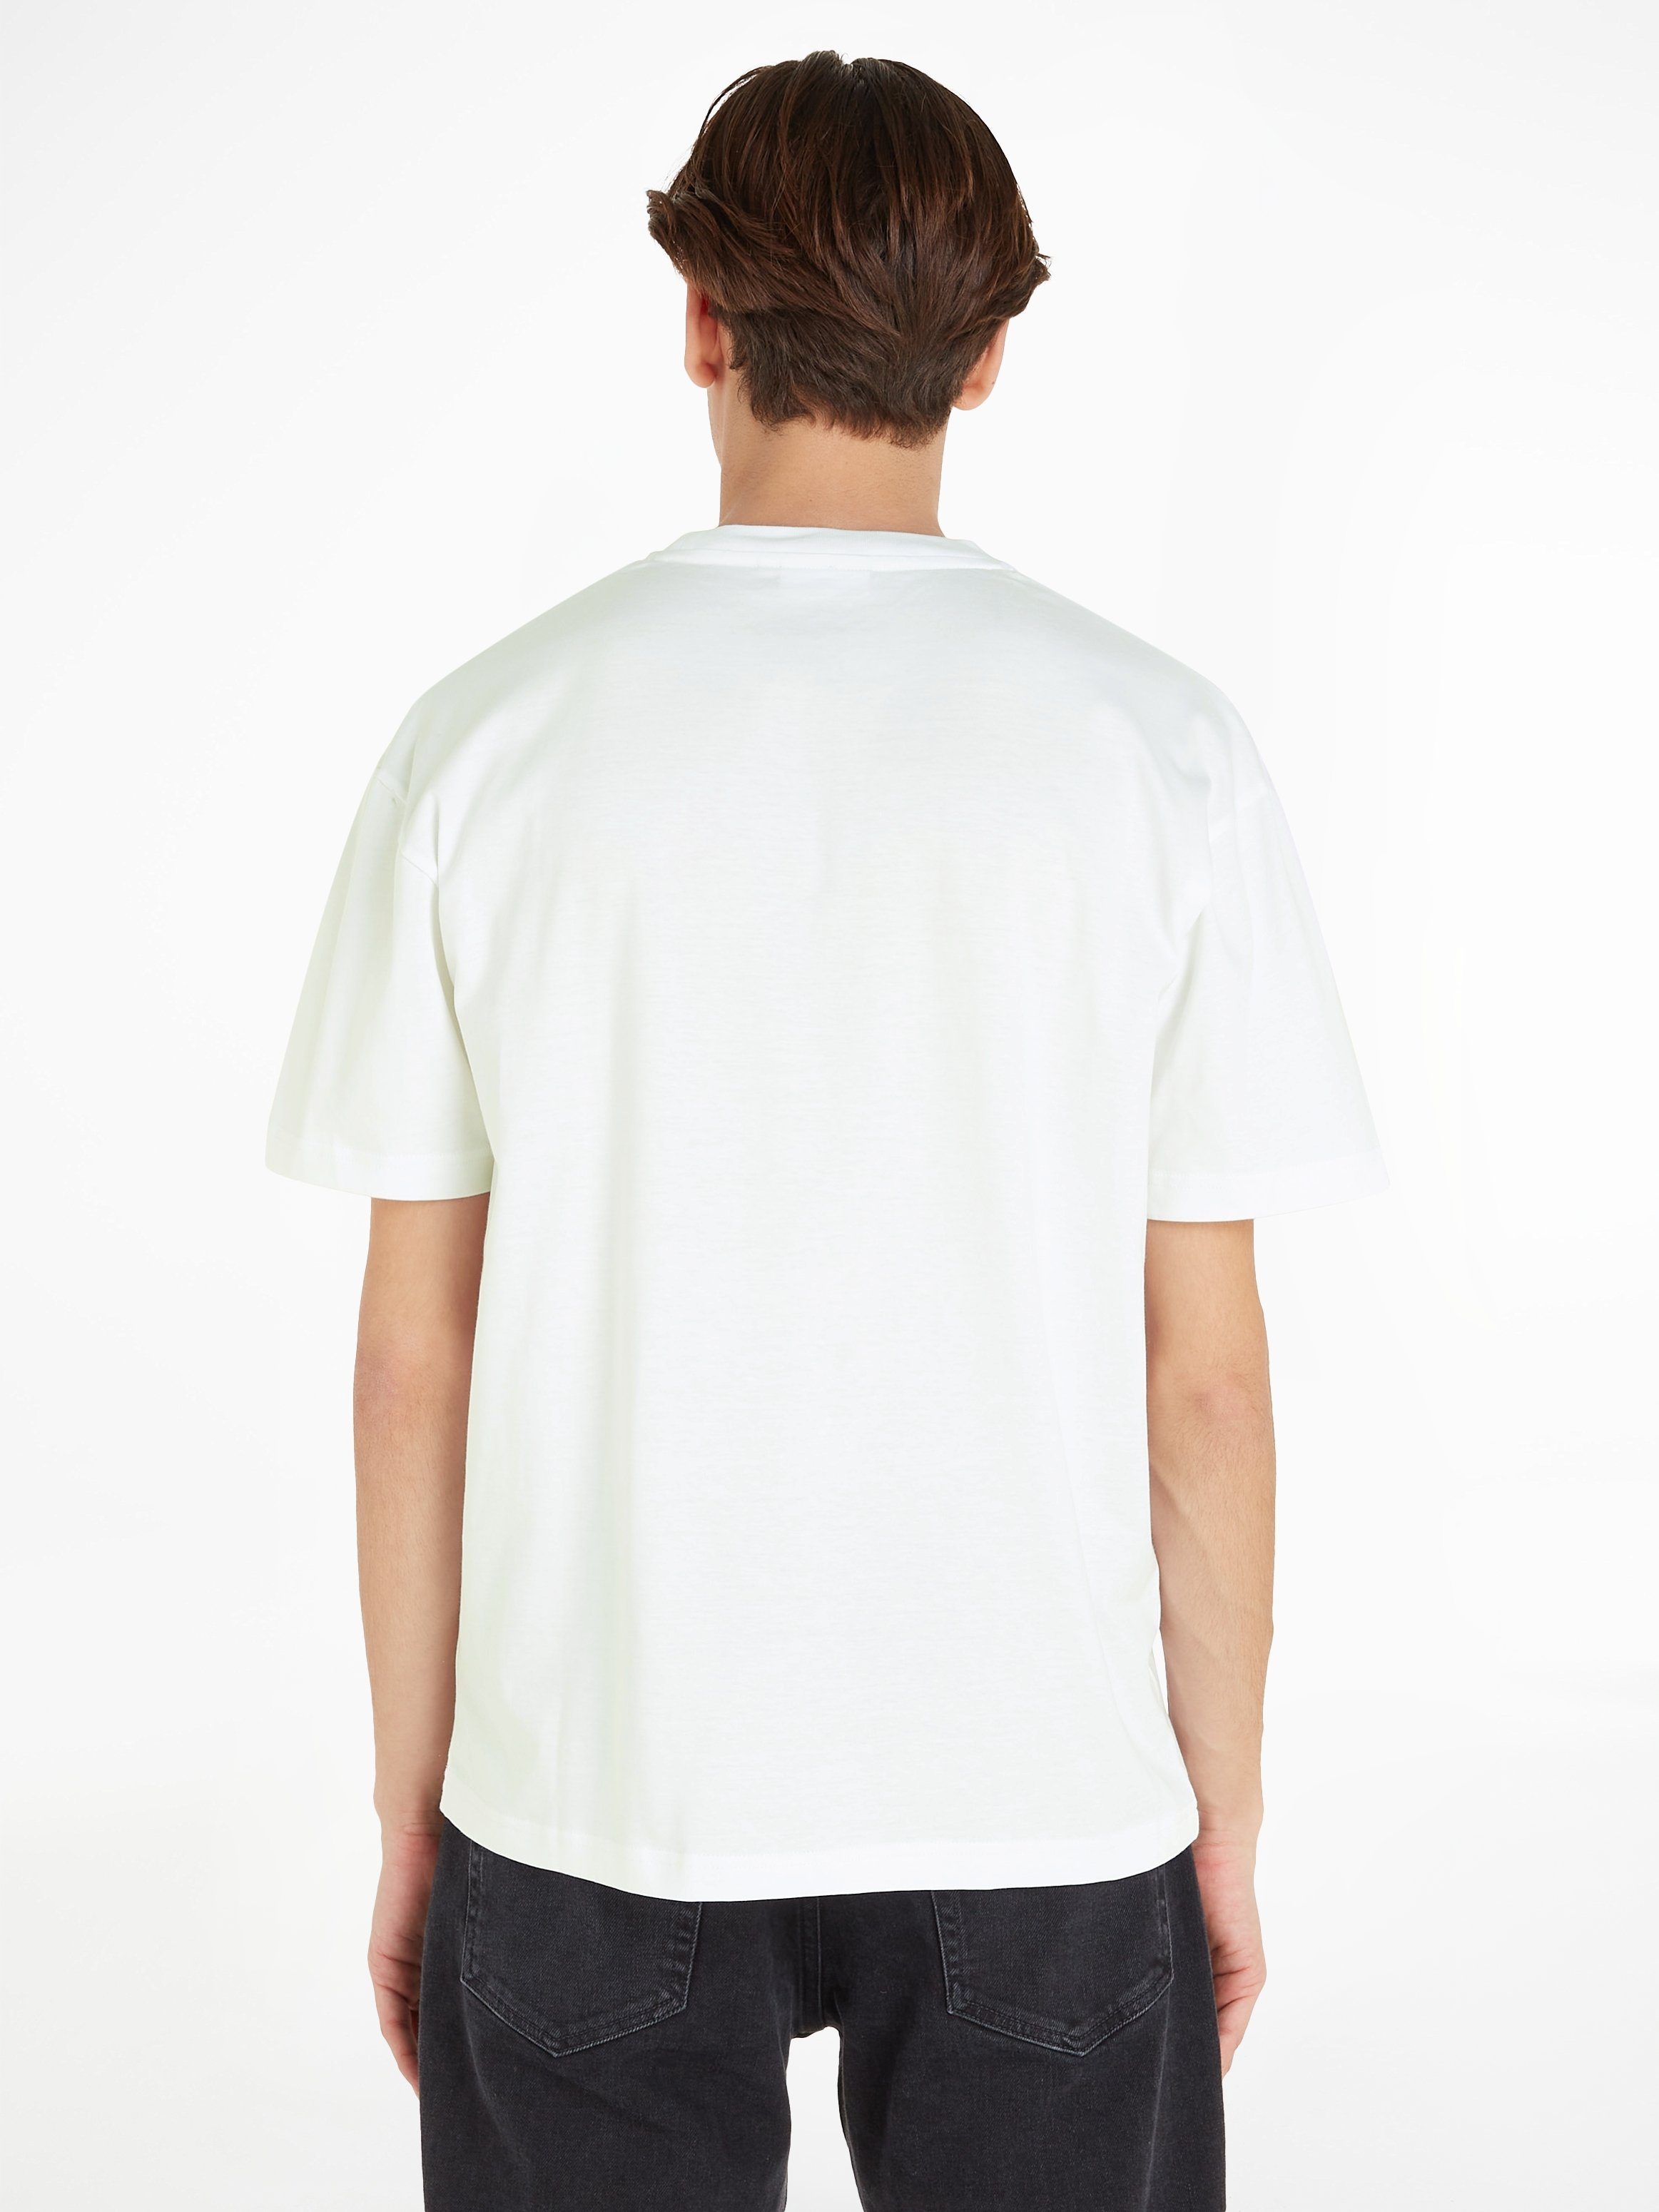 Calvin Klein T-Shirt Markenlabel White Bright LOGO aufgedrucktem HERO mit COMFORT T-SHIRT